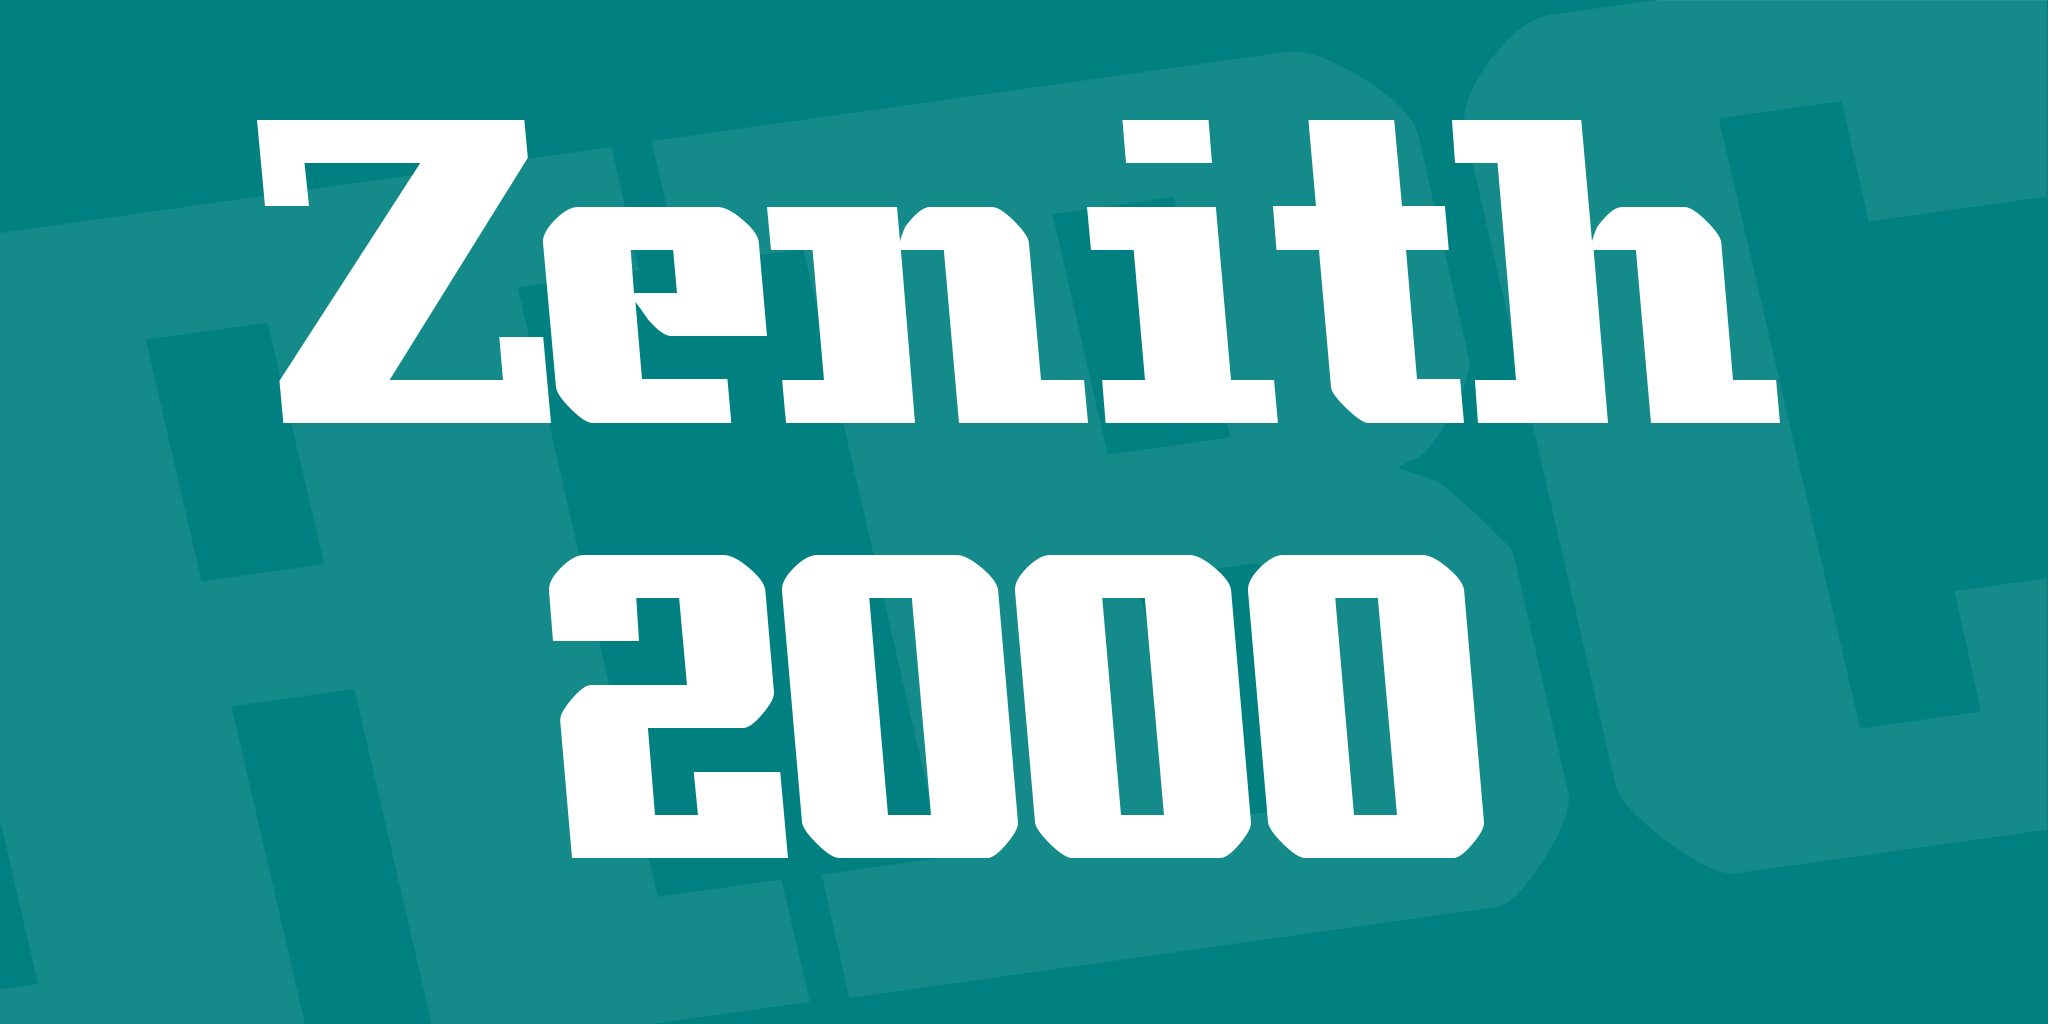 Zenith 2000